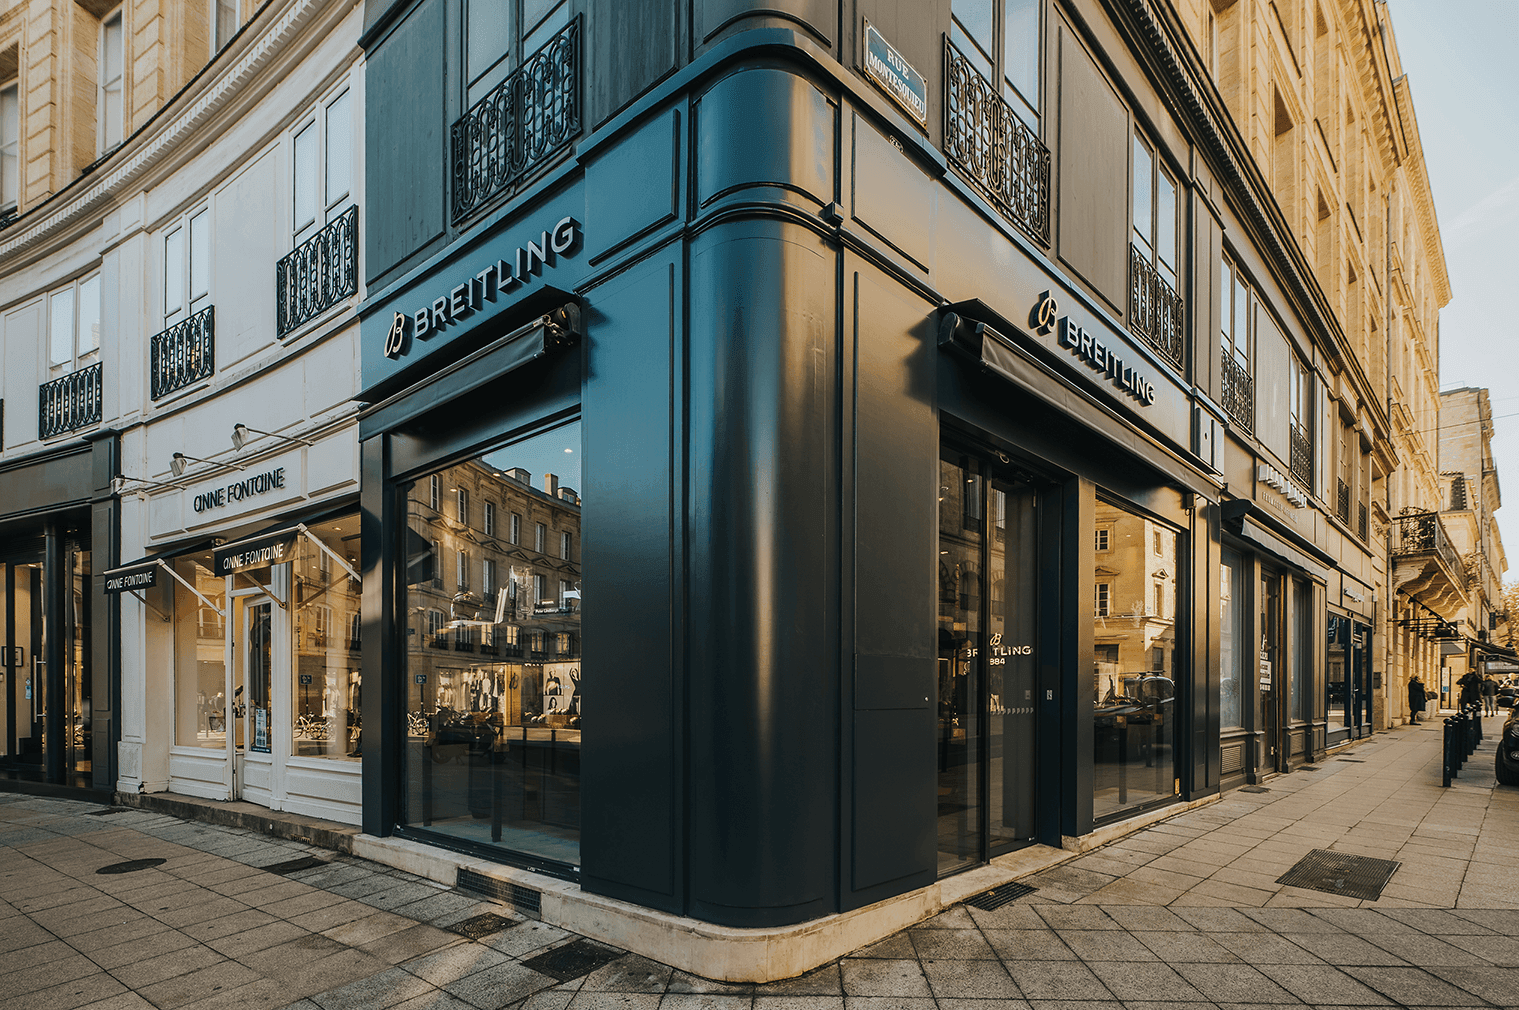 Breitling Boutique Bordeaux